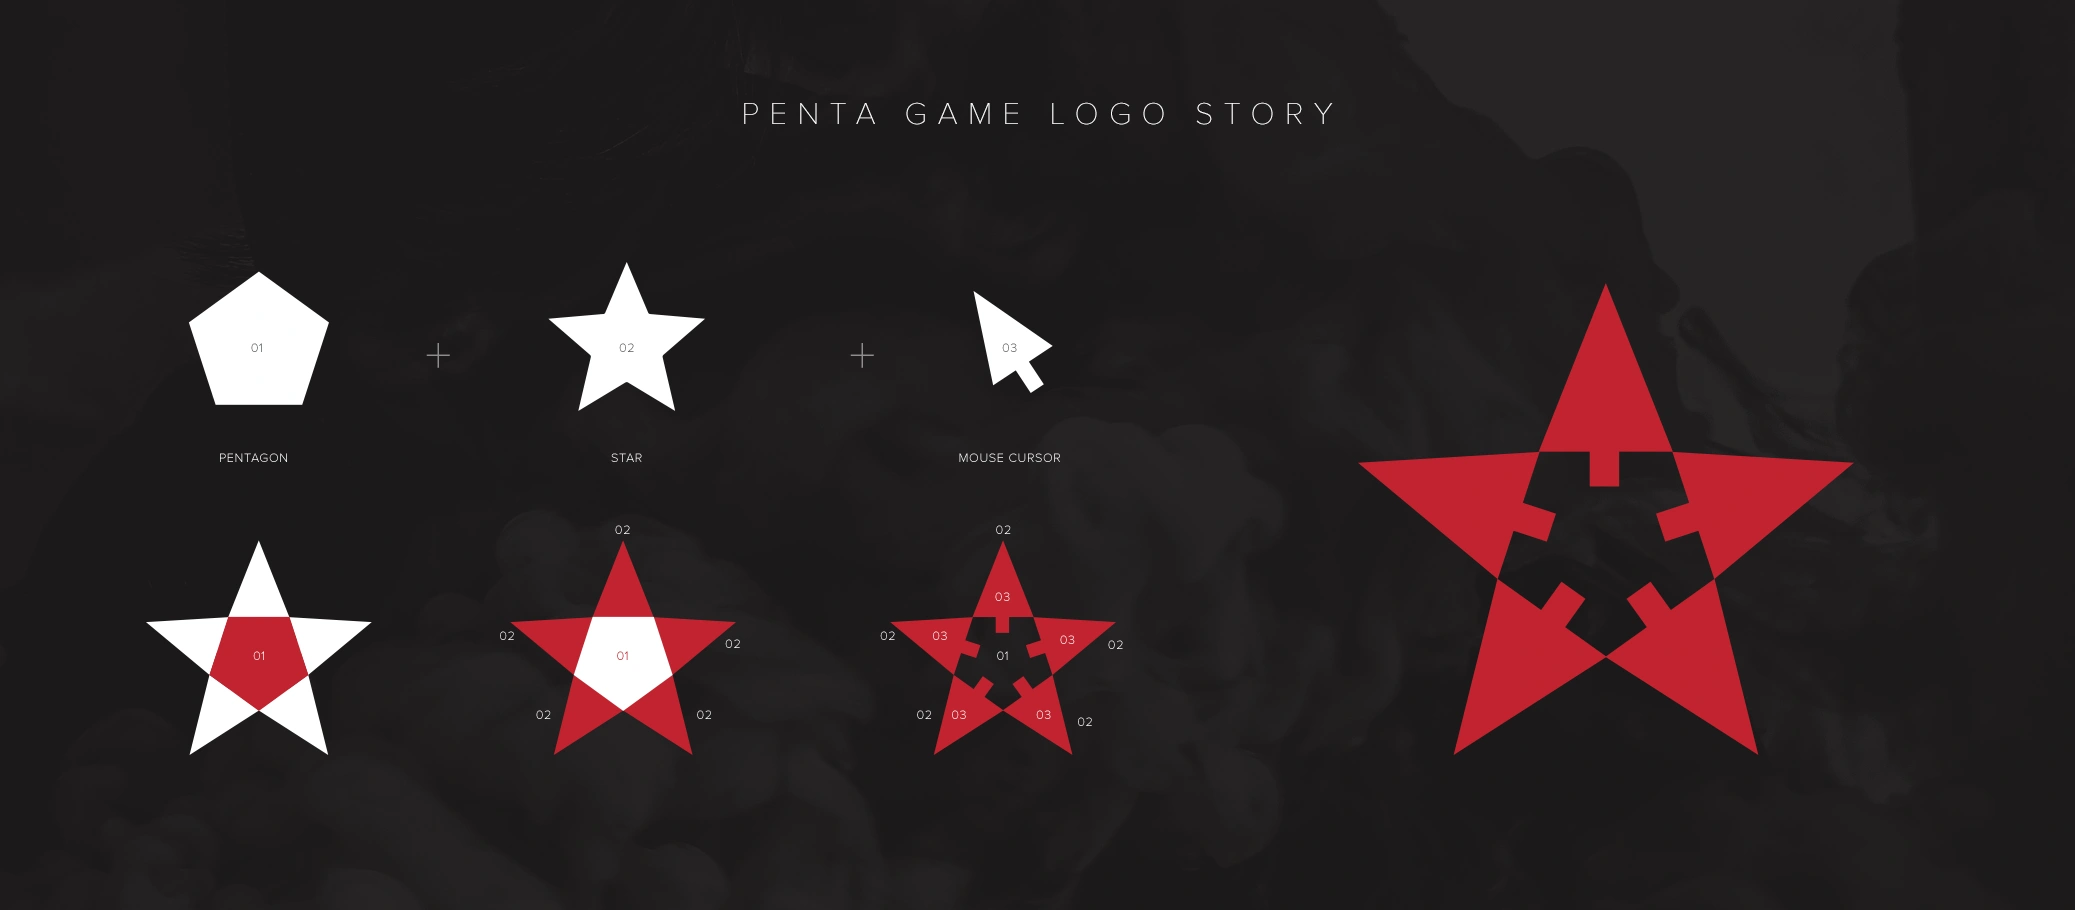 Penta Game Logo Görsel Anlam ve İfade